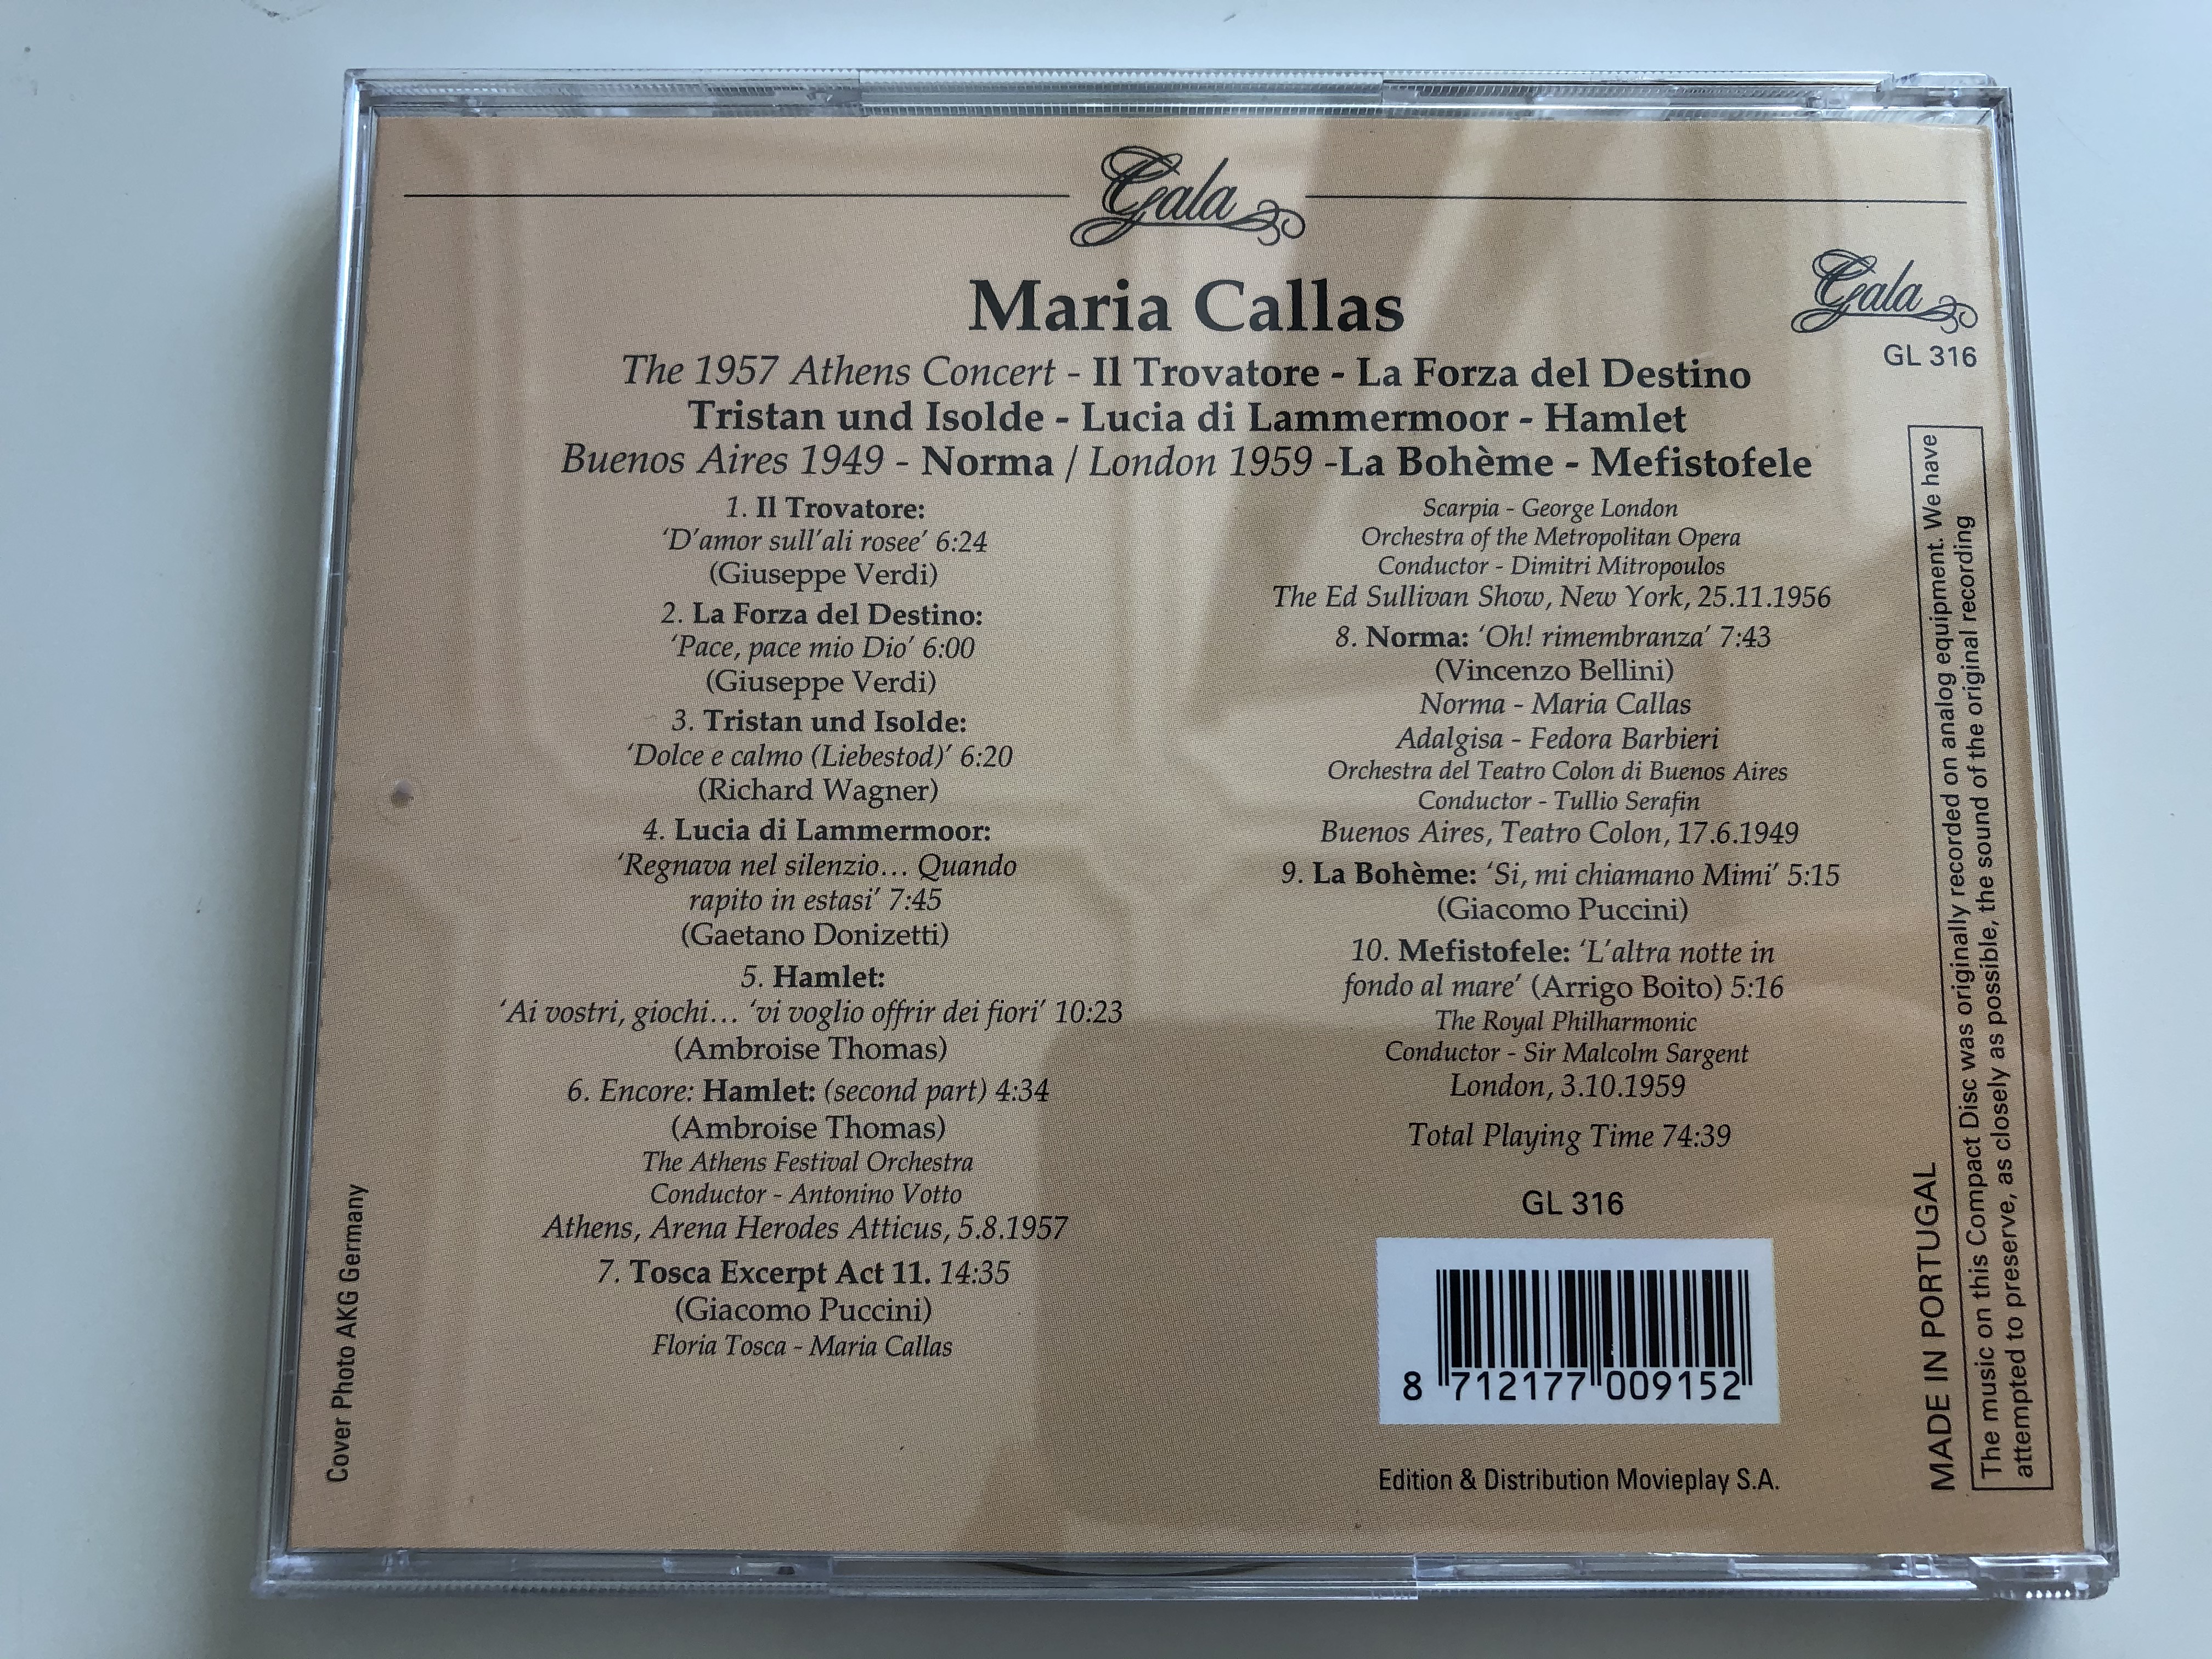 maria-callas-the-1957-athens-concert-il-trovatore-la-forza-del-destino-tristan-und-isolde-lucia-di-lammermoor-hamlet-buenos-aires-1949-norma-london-1959-la-boheme-mefistofele-gala-5-.jpg